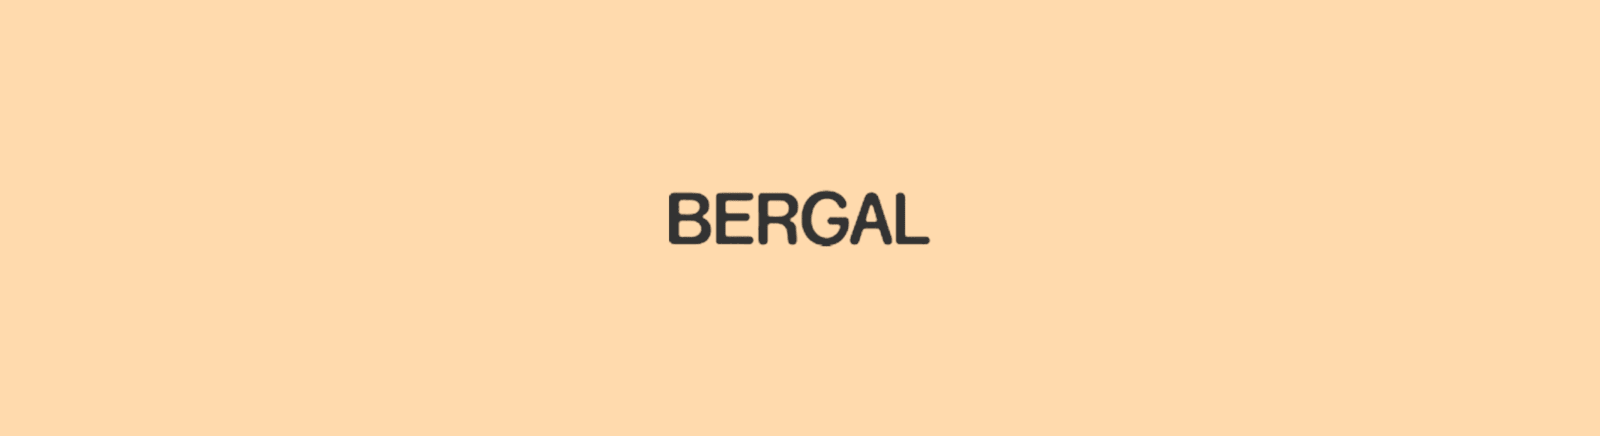 Bergal Schaftformer und Schuhspanner online kaufen bei Prange